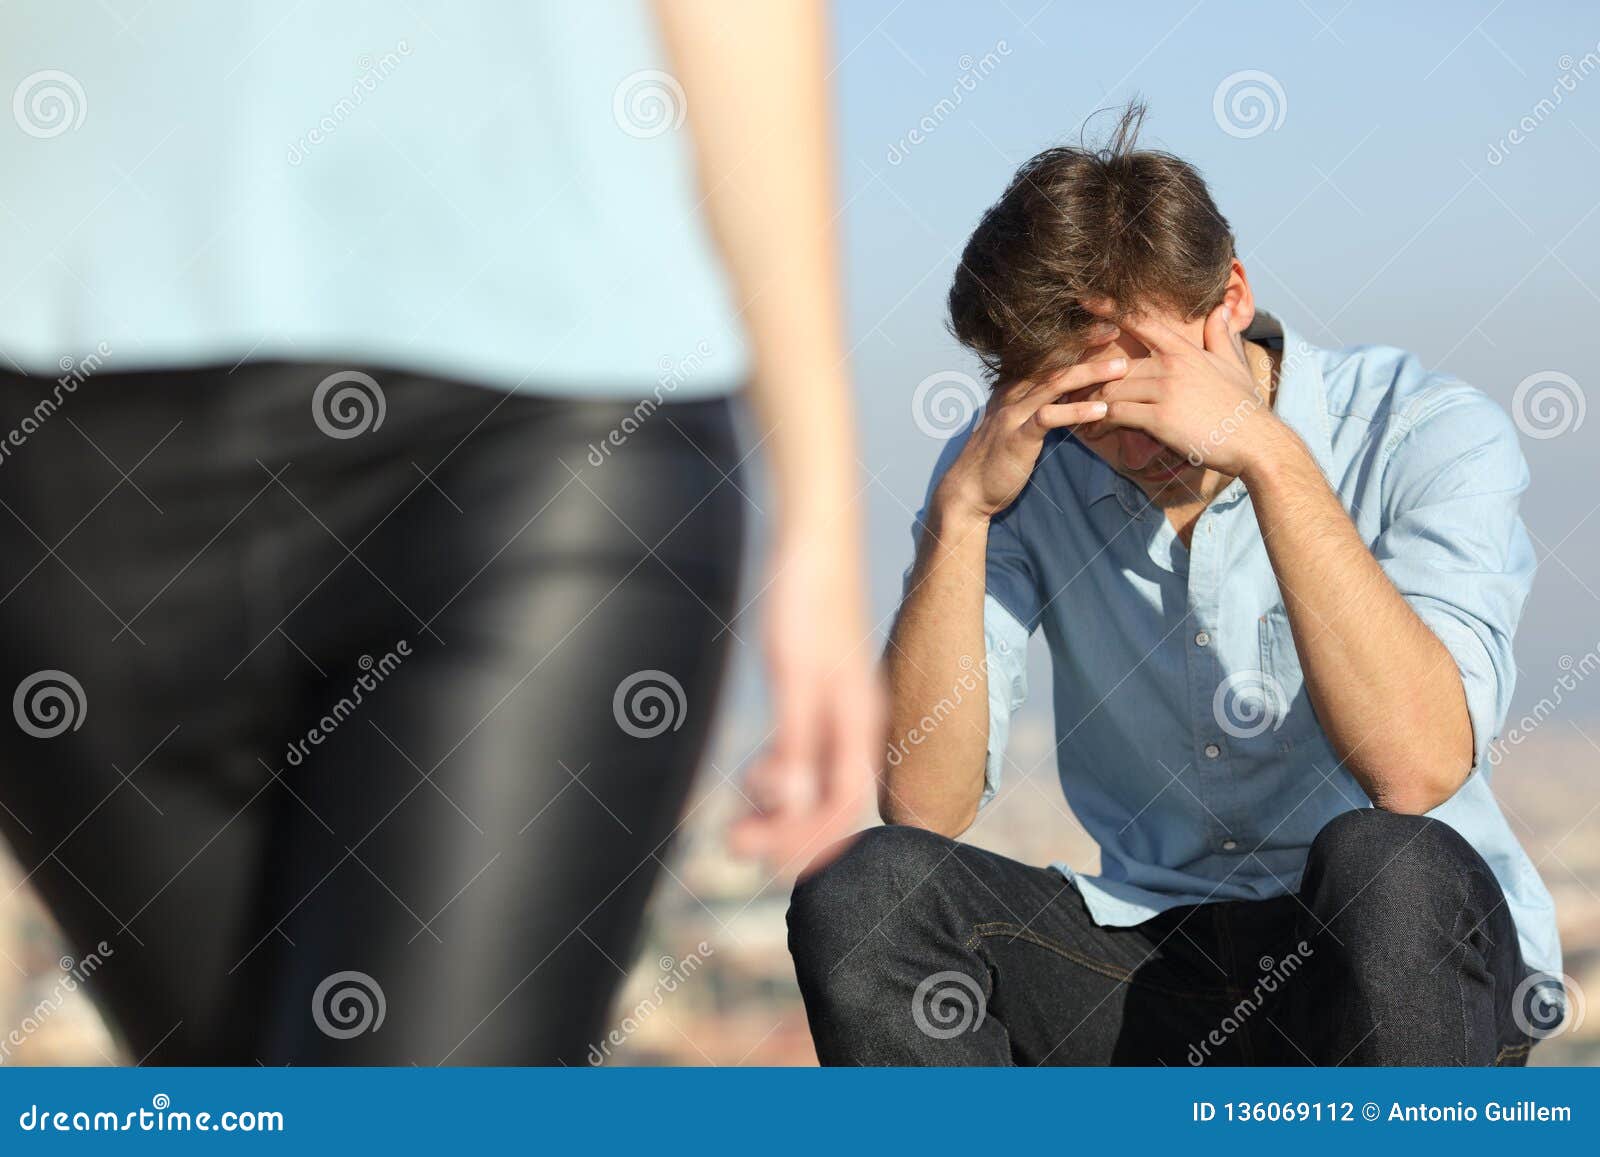 sad man complaining outdoors after break up